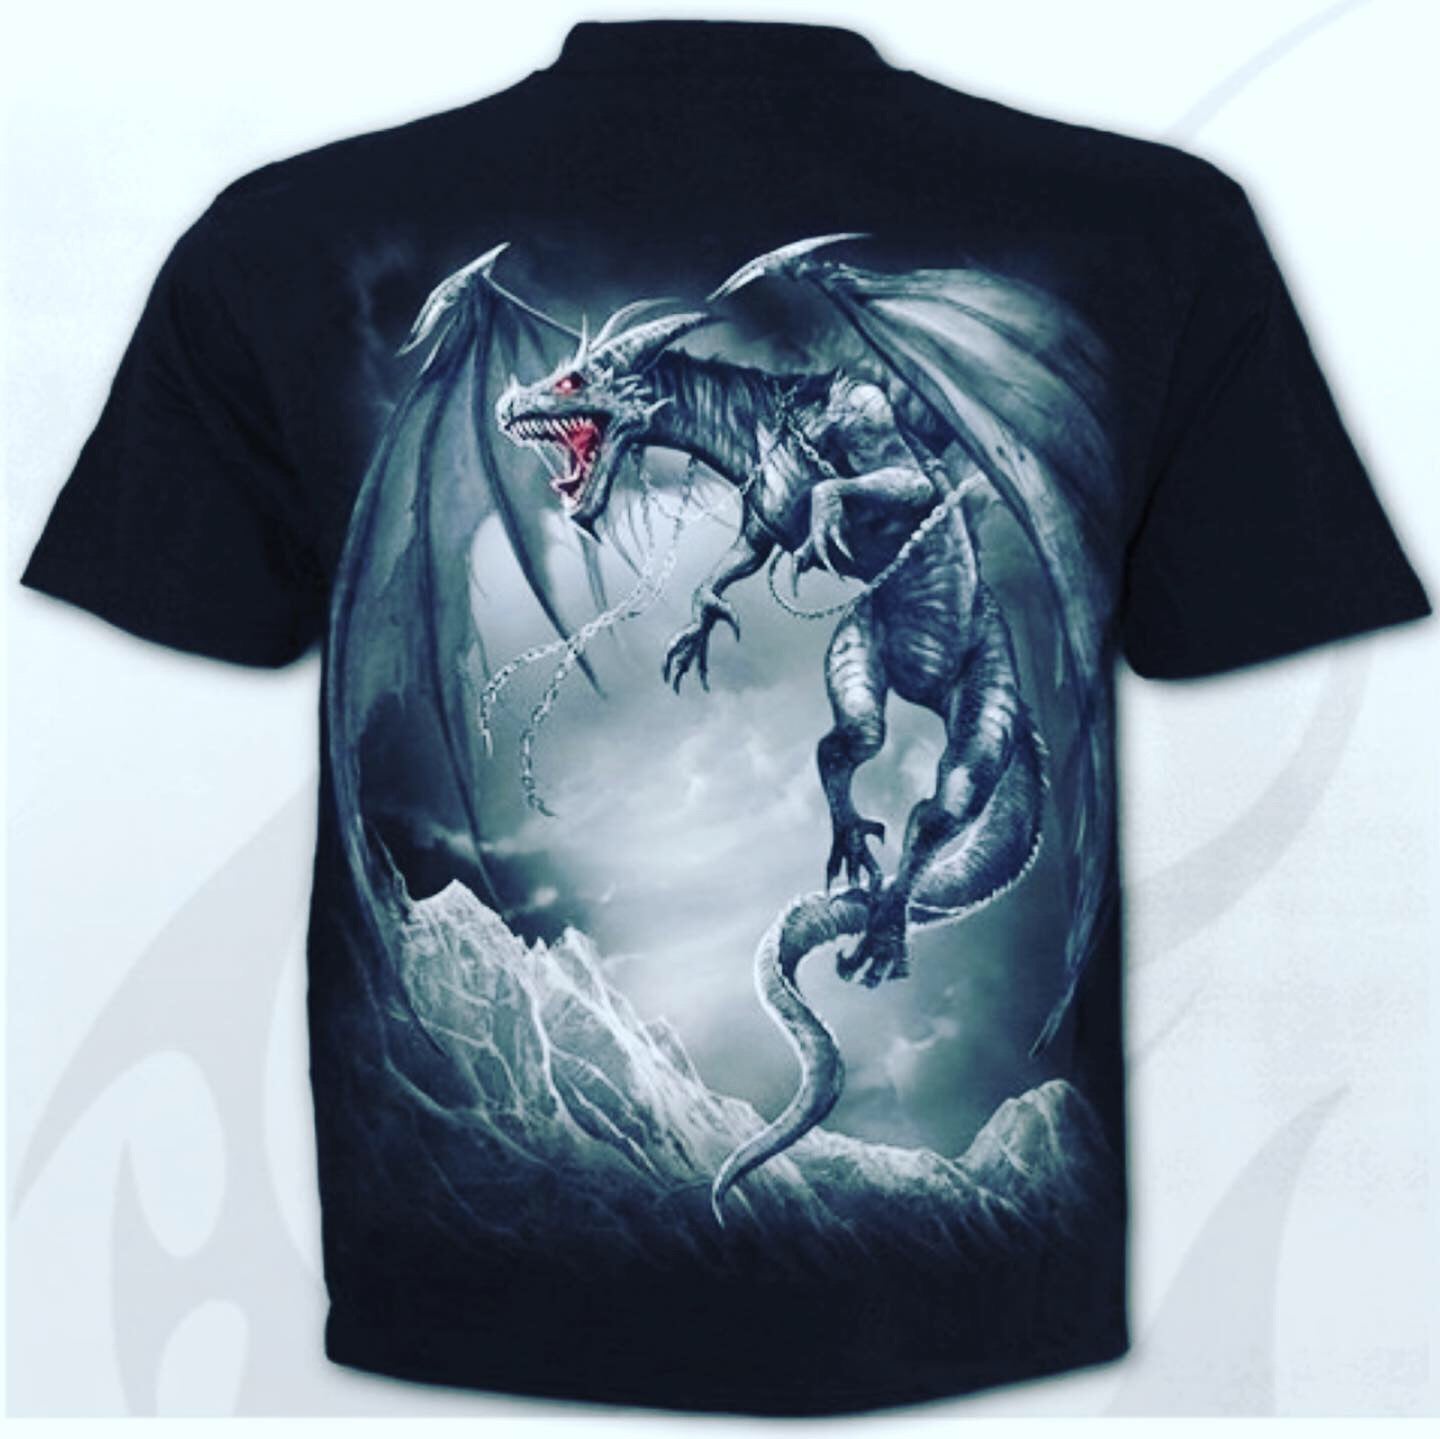 Dragon cry t-shirt